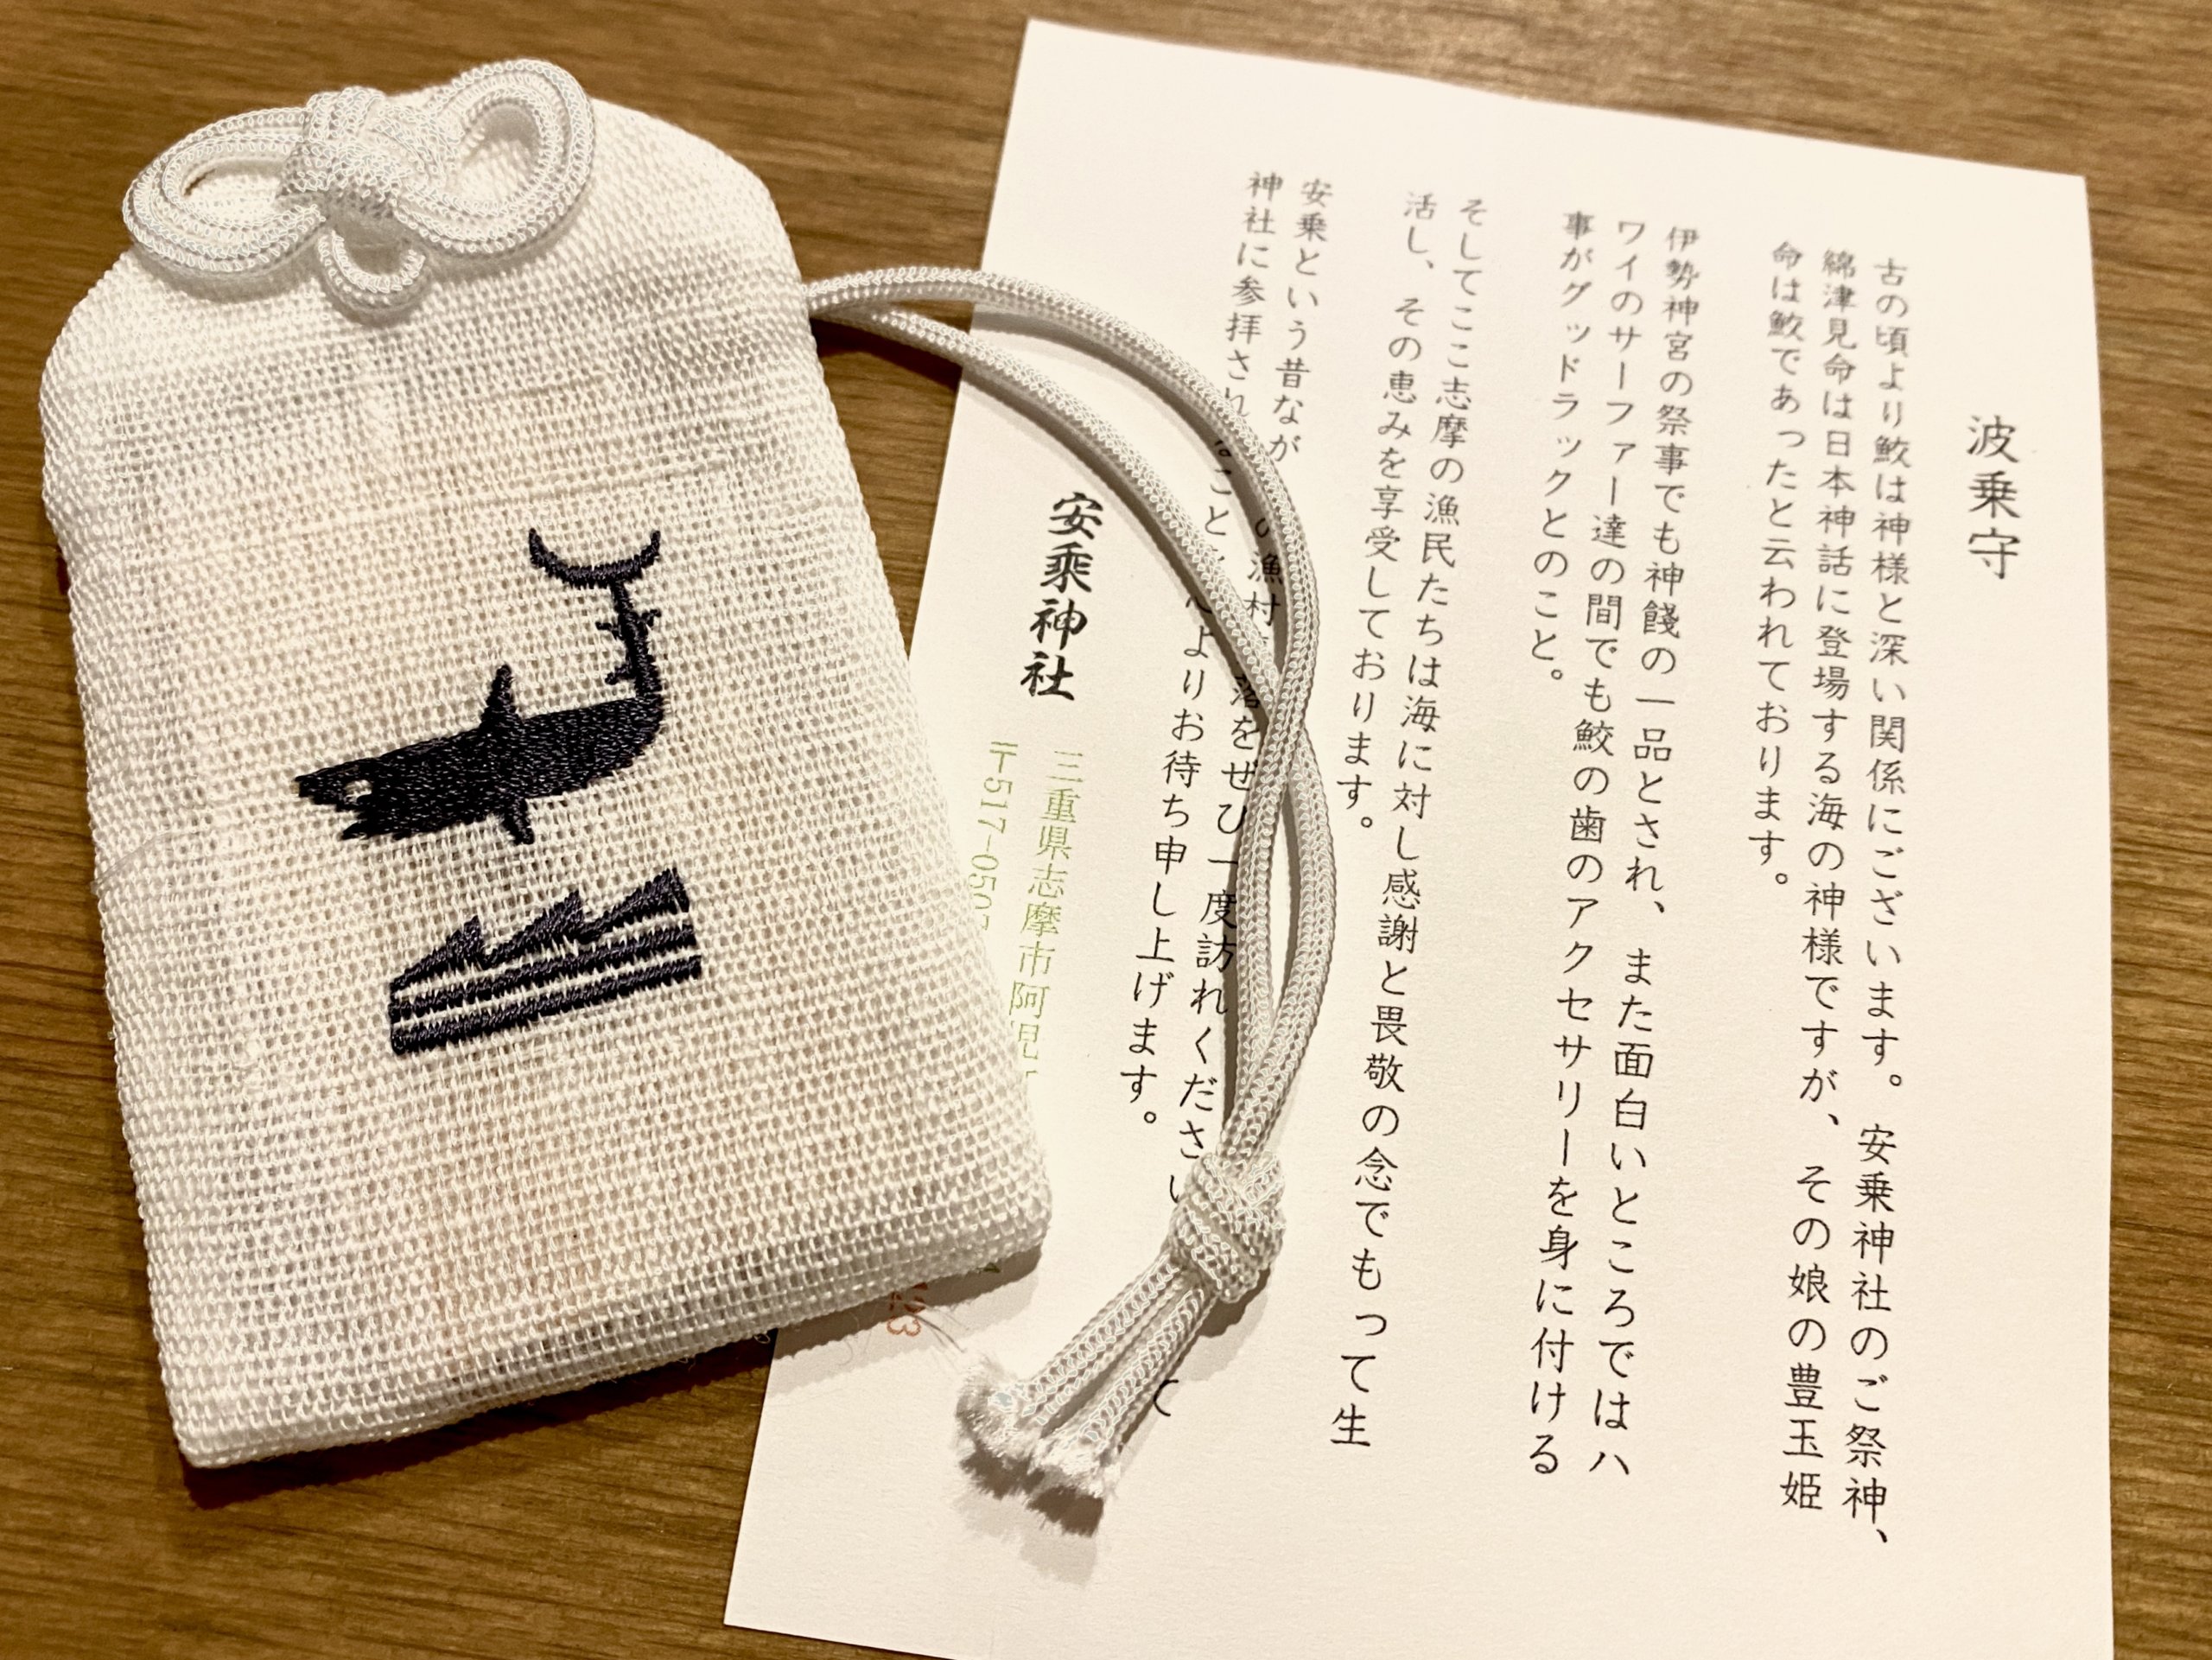 三重県伊勢志摩の安乗神社で買った波乗り用のお守り